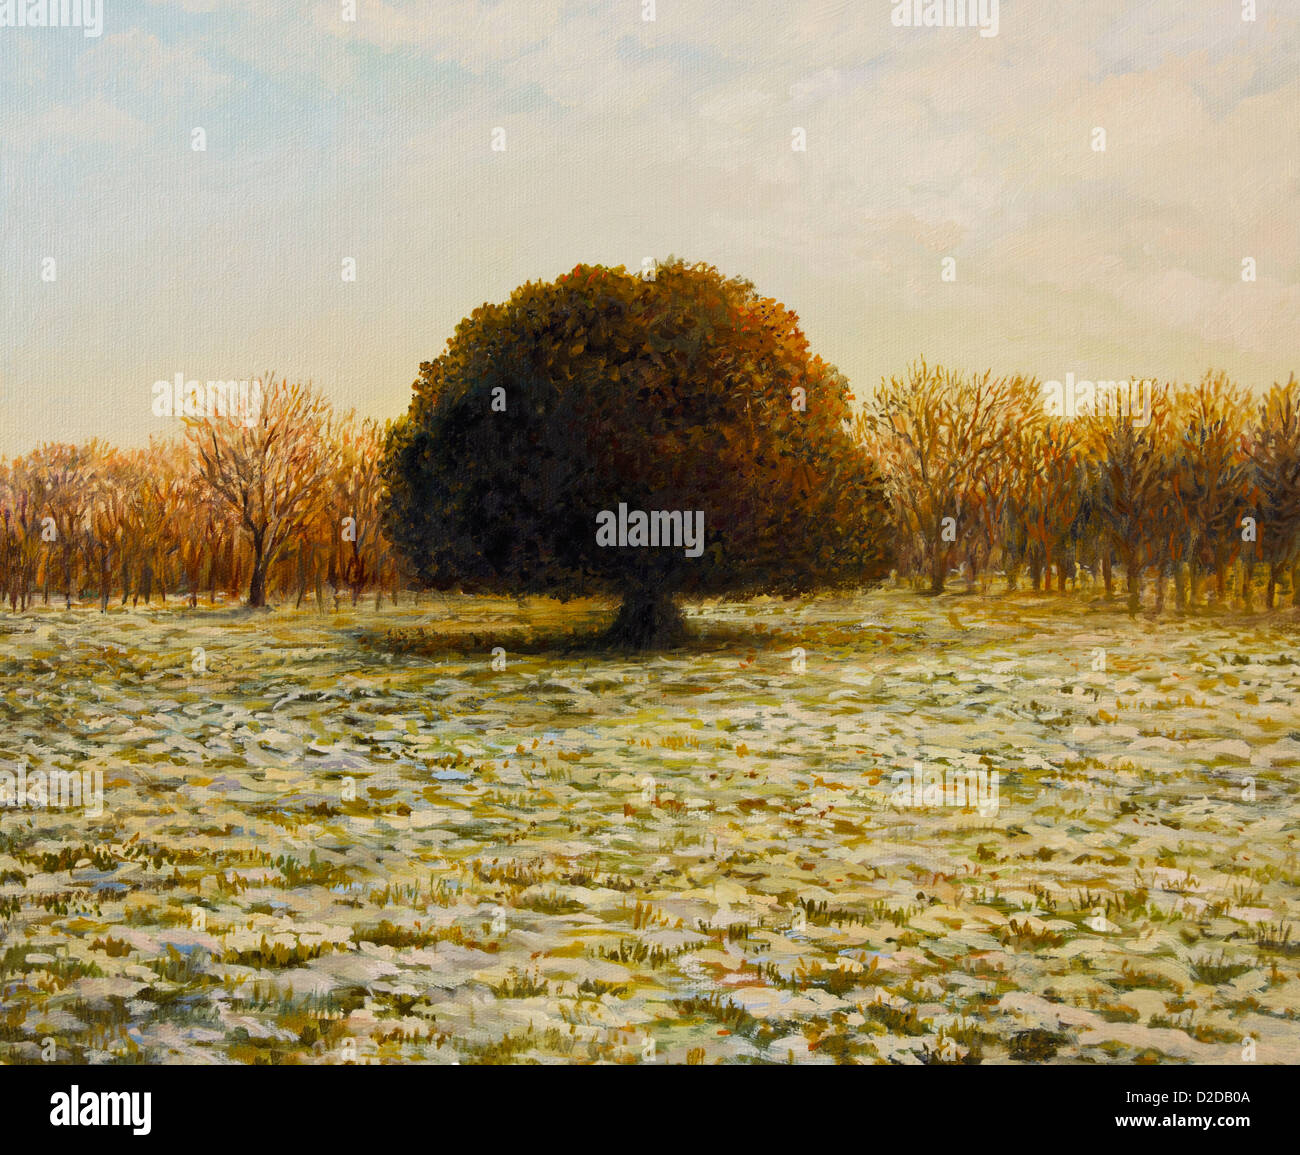 Une peinture à l'huile sur toile d'un coucher de soleil d'or chaud d'un vieux chêne vert arbre dans la fin de l'hiver. Banque D'Images